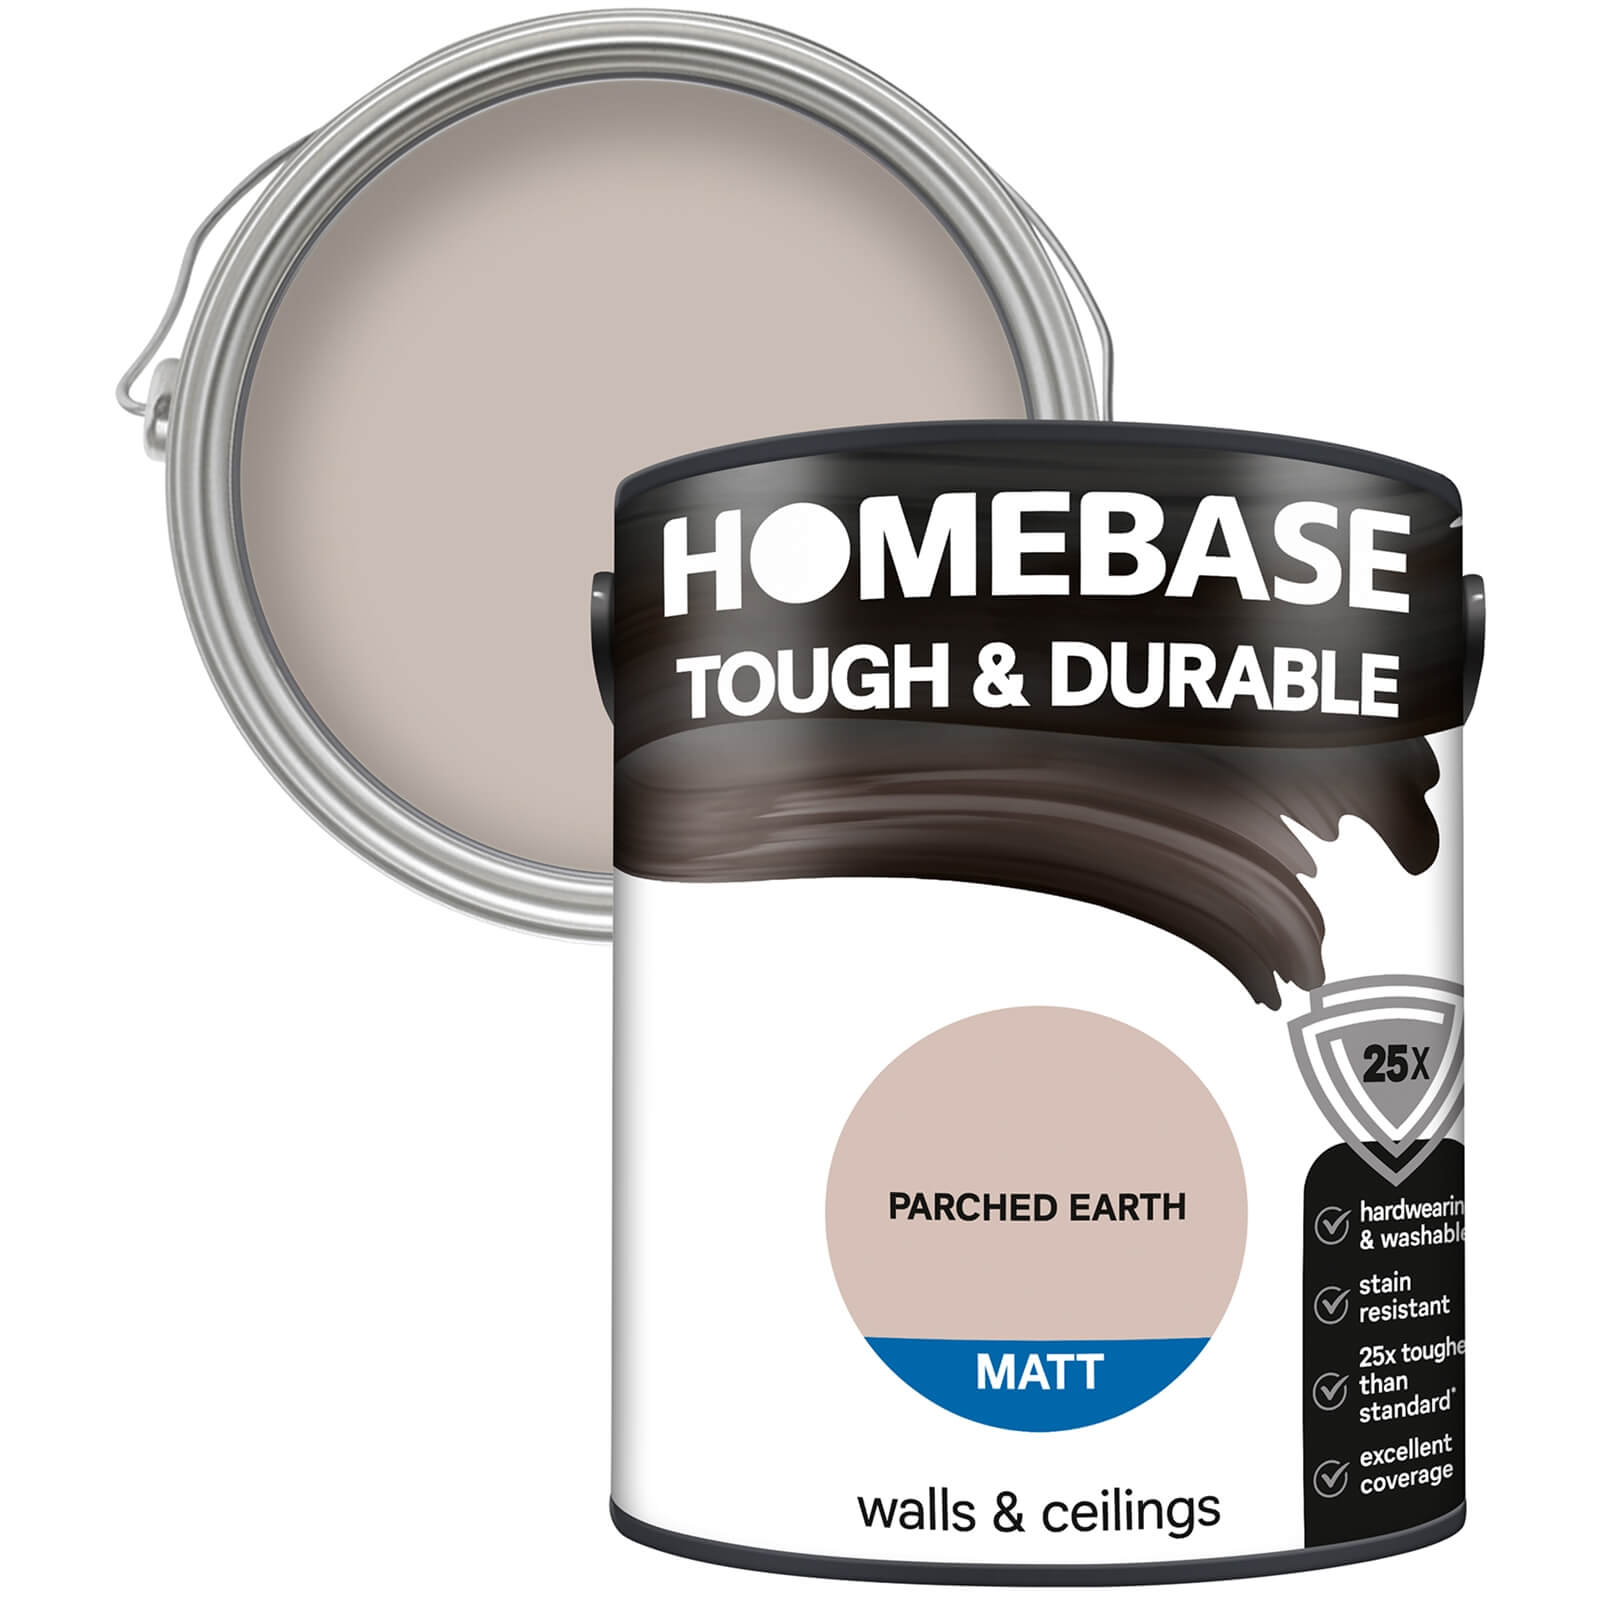 Photo of Homebase Tough & Durable Matt Paint - Parched Earth 5l